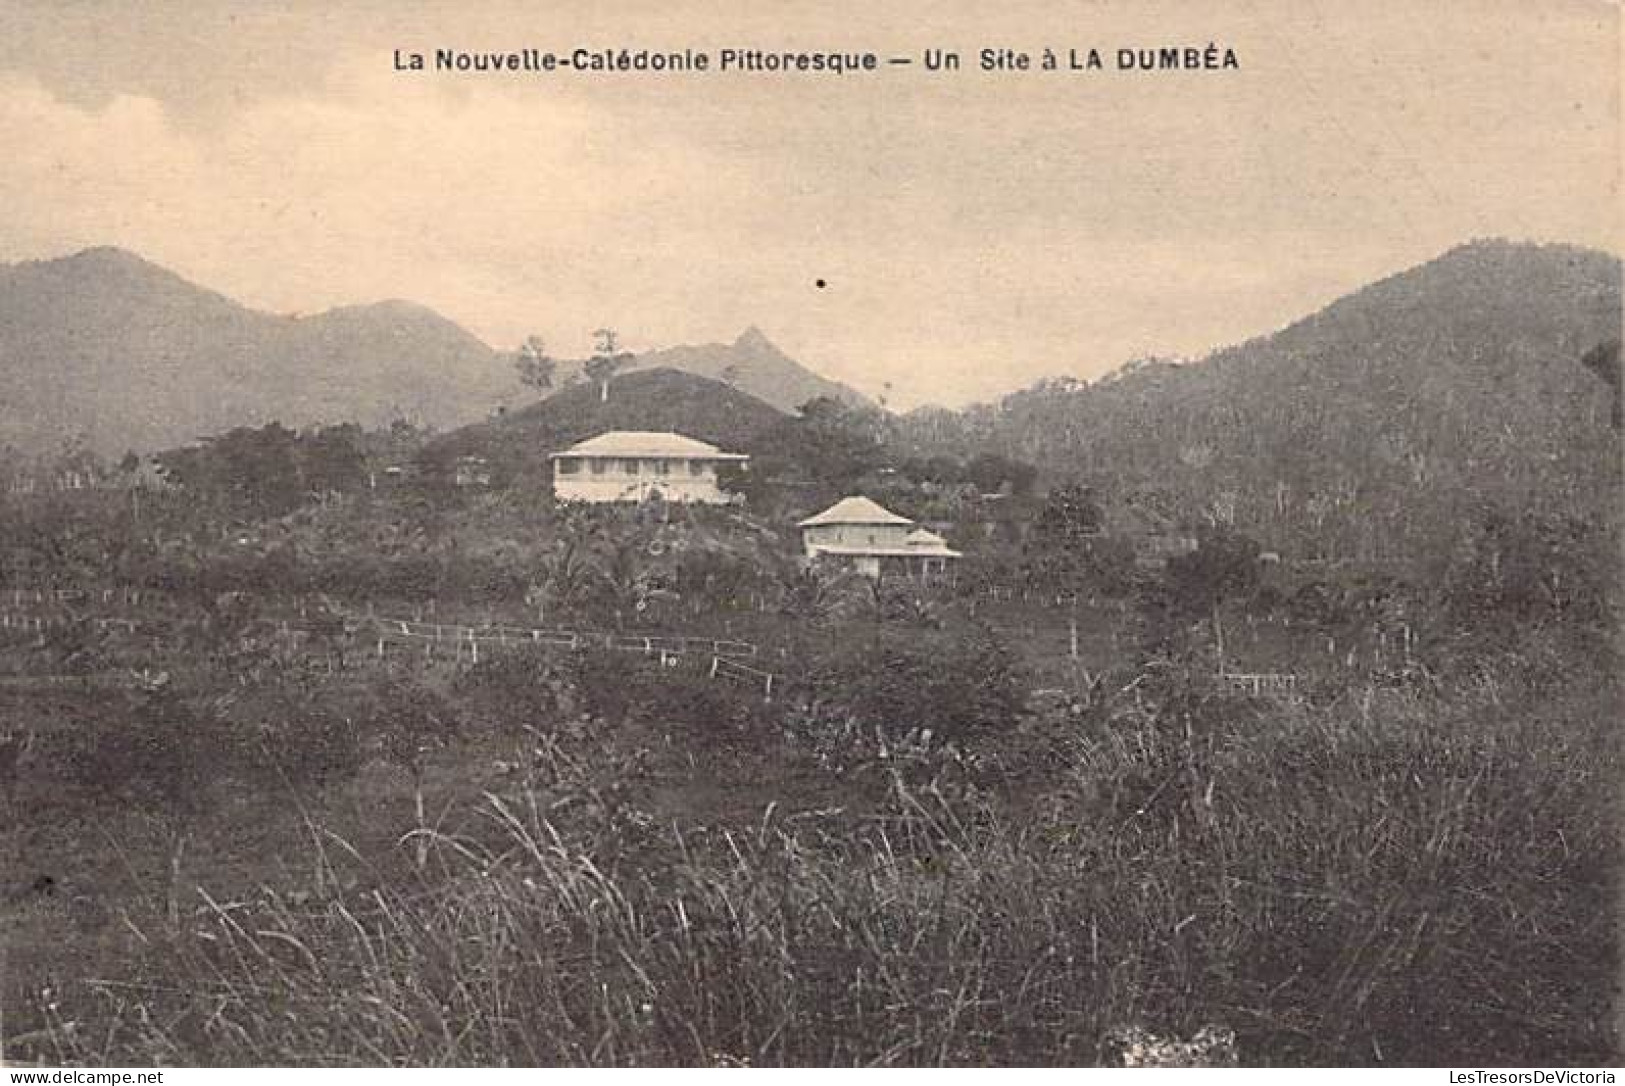 Nouvelle Calédonie Pittoresque - Un Site à La Dumbéa - Carte Postale Ancienne - Nouvelle-Calédonie